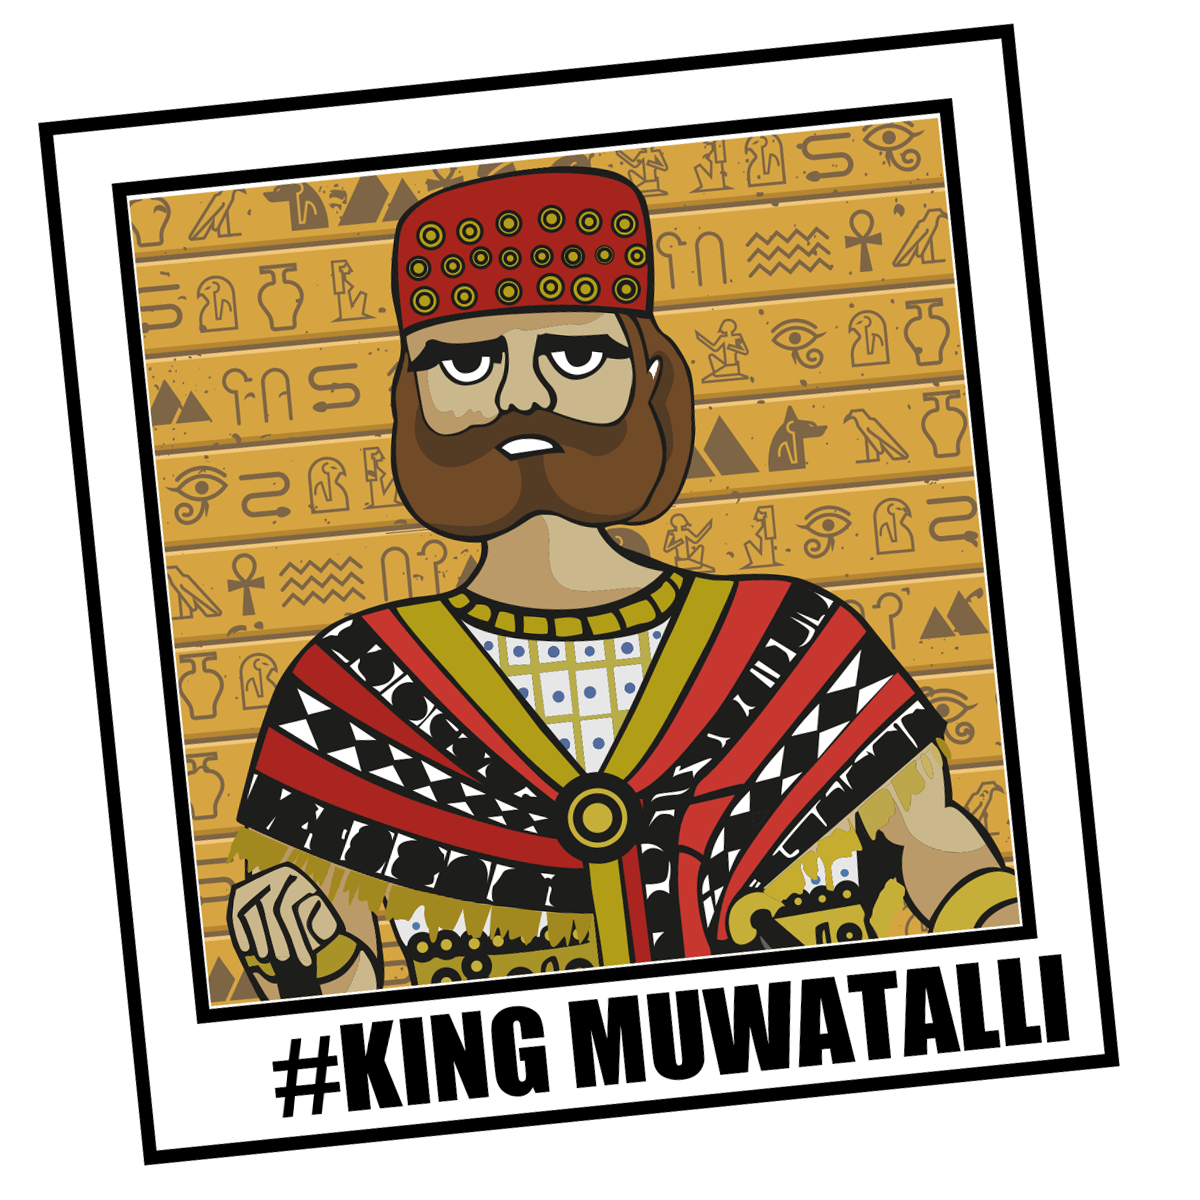 Muwatalli: The Hittite King